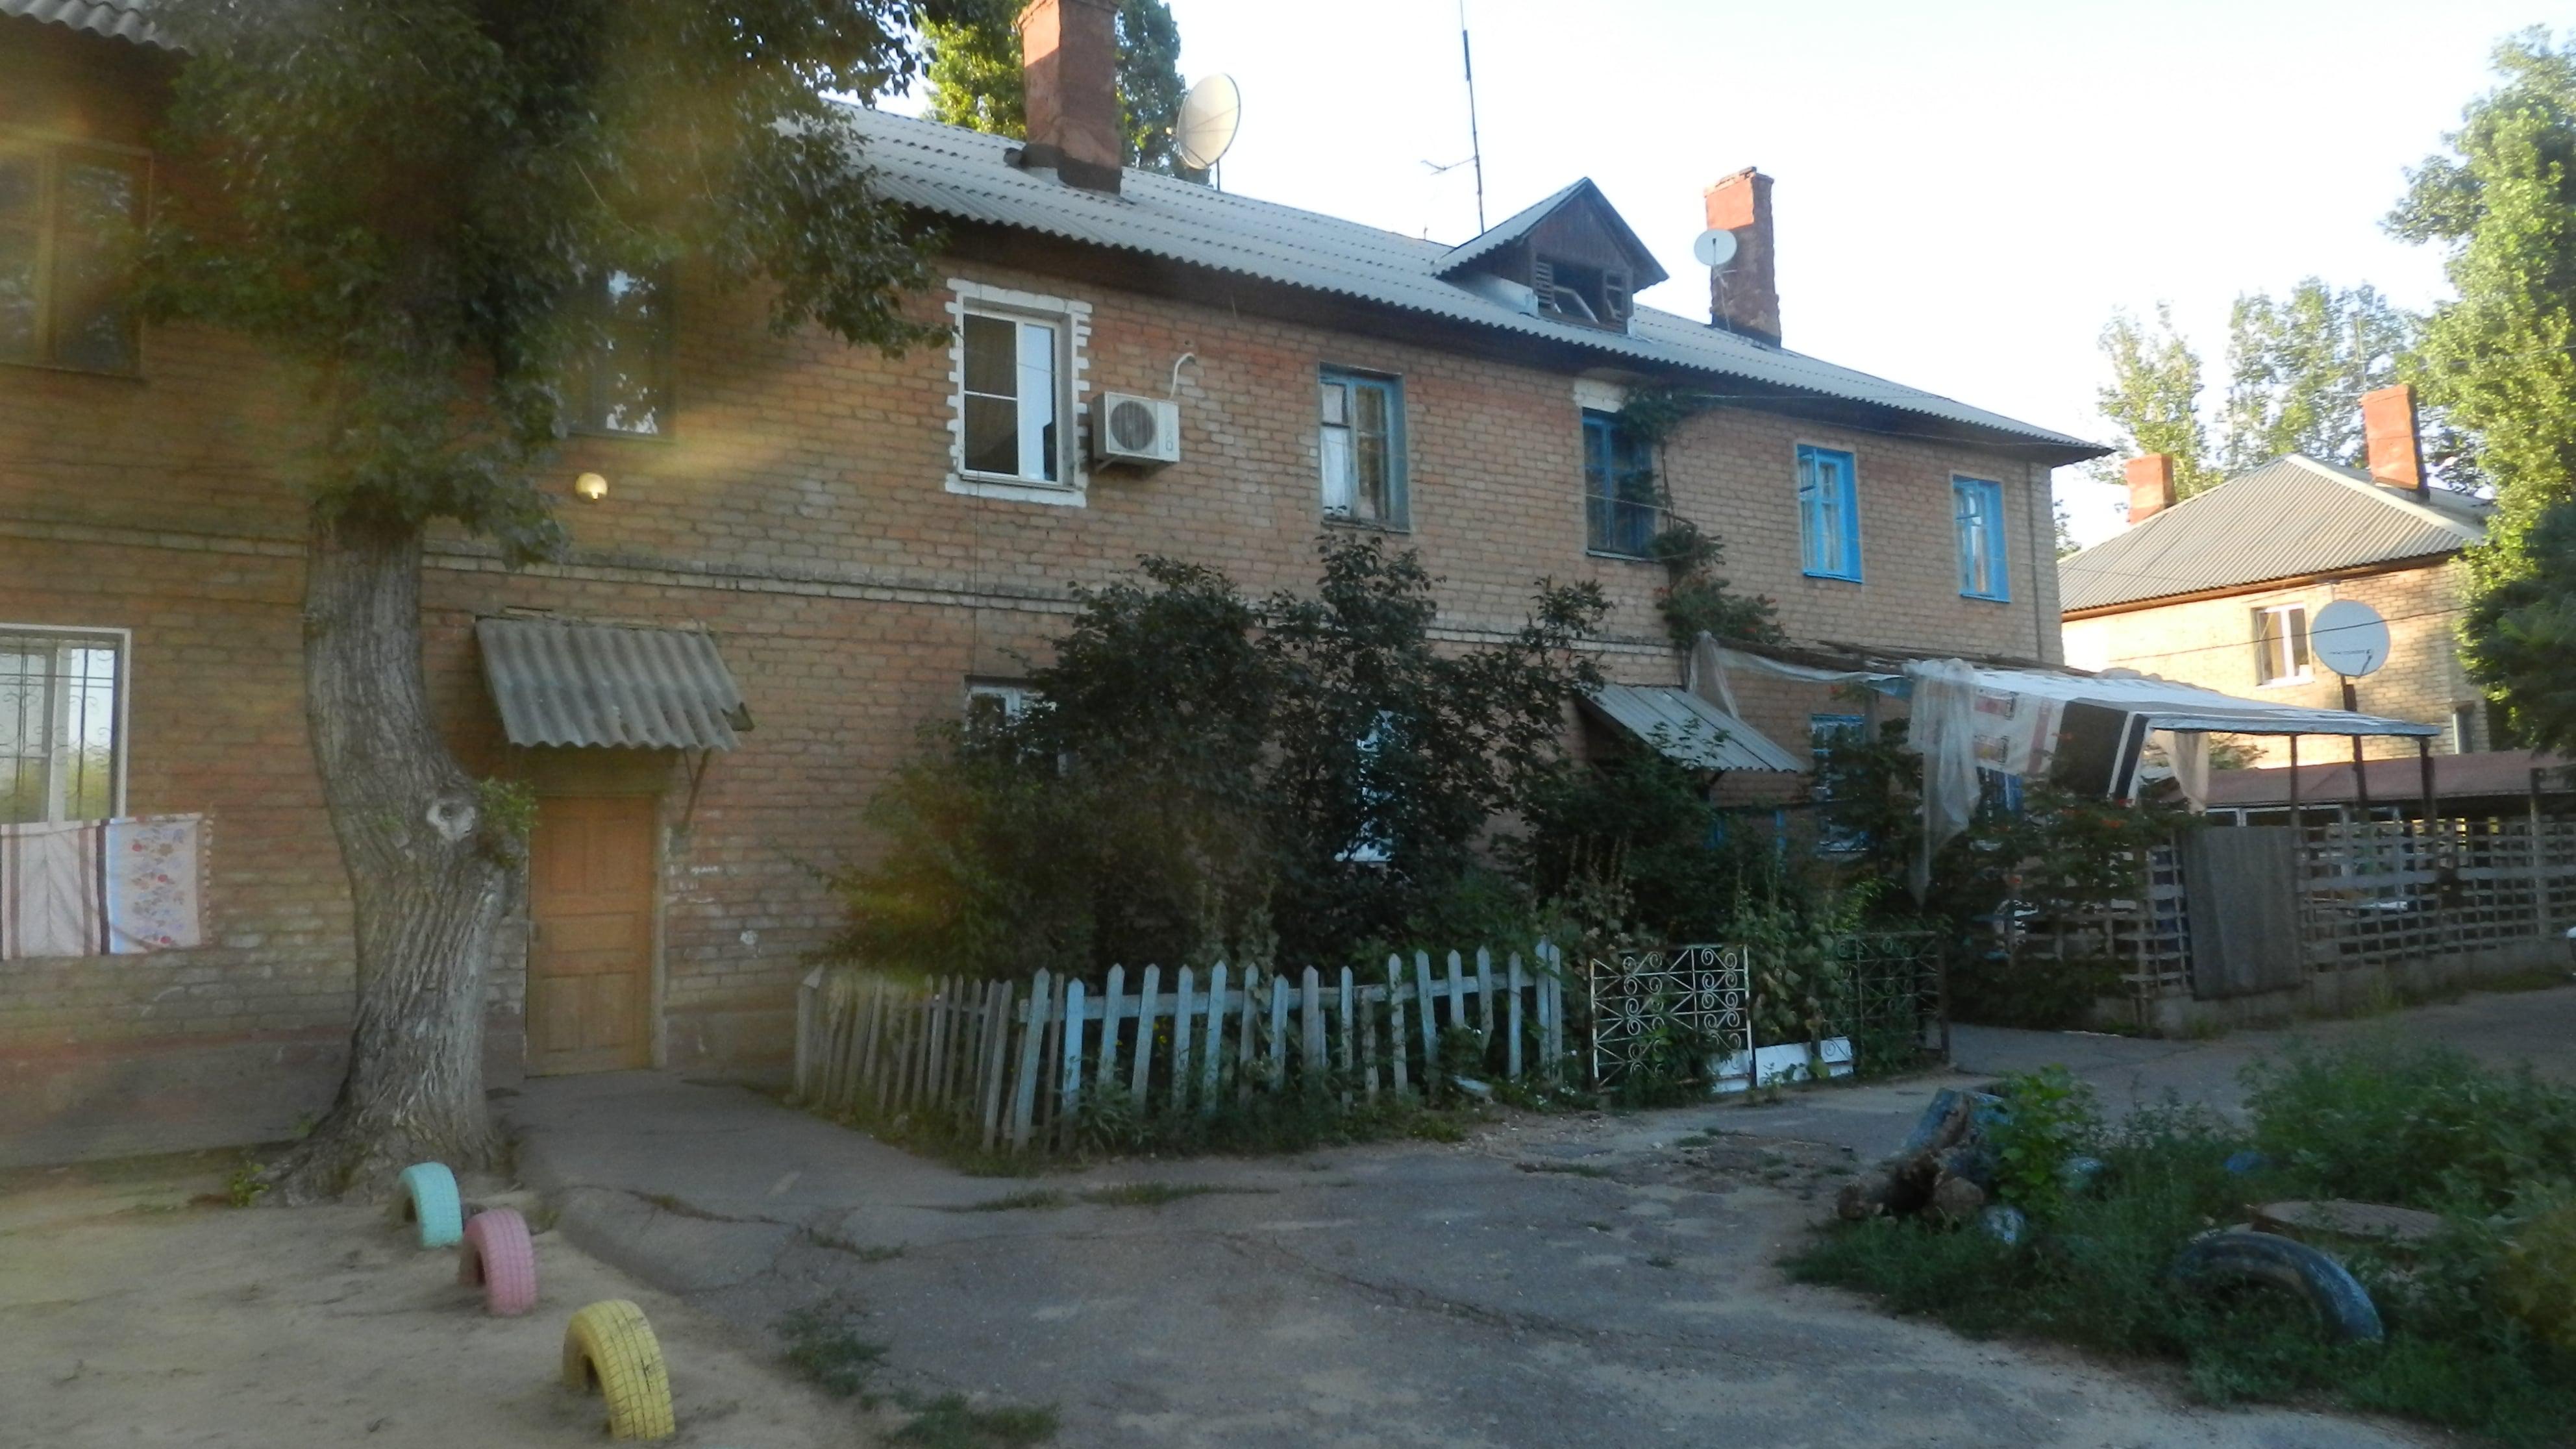 Дом, в котором проживает Мария Савинкова. Волгоград, август 2018 года. Фото Татьяны Филимоновой для "Кавказского узла"